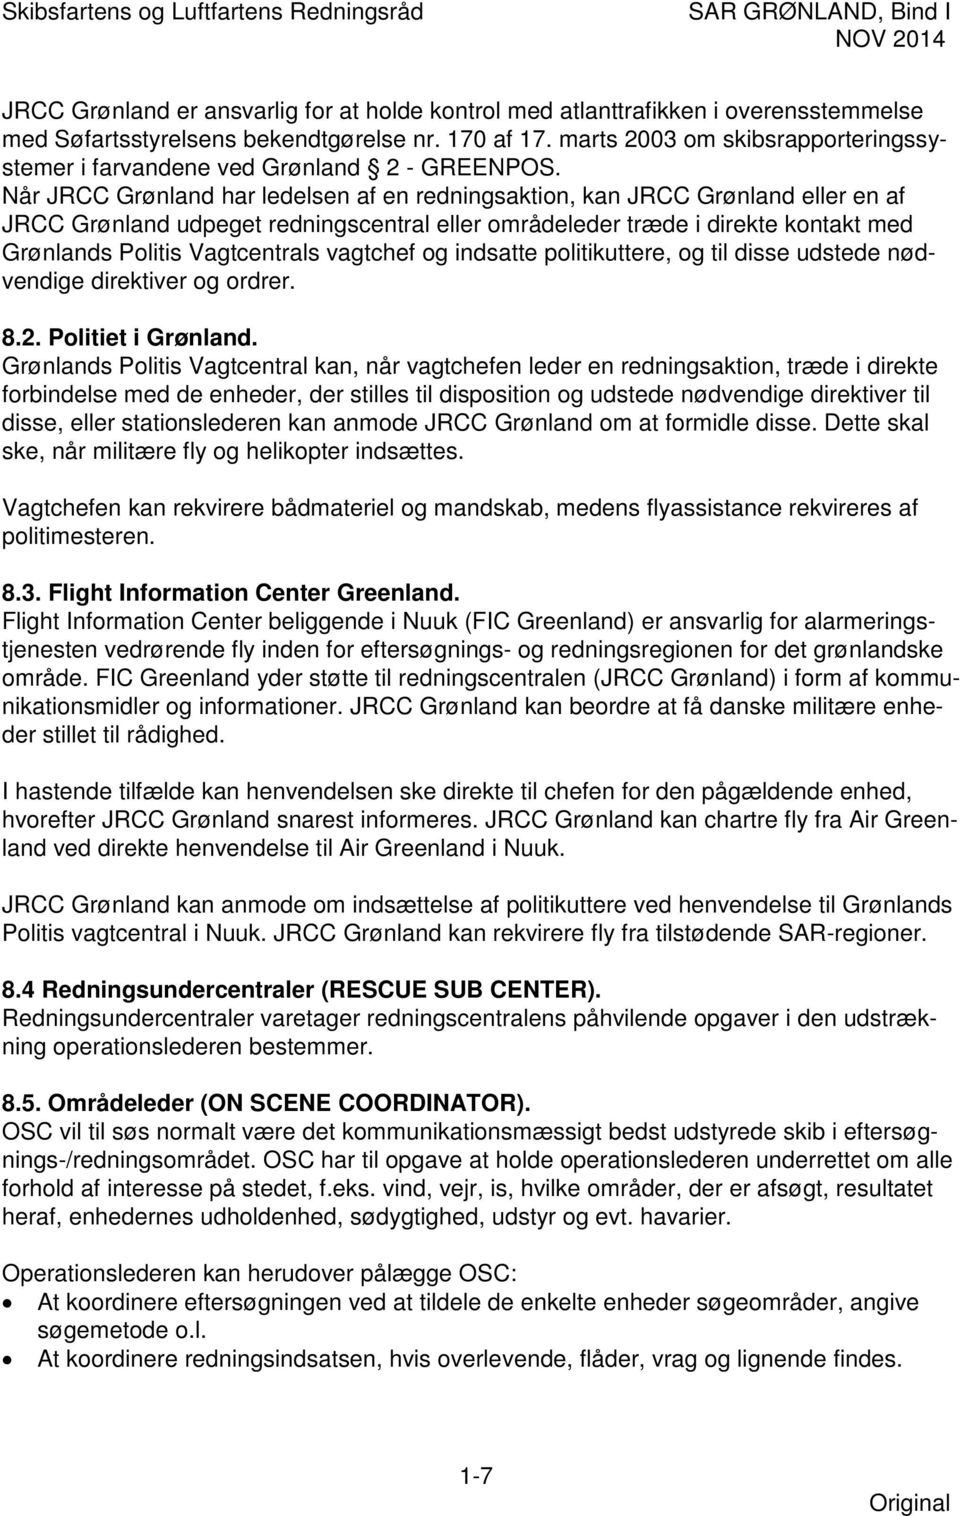 Når JRCC Grønland har ledelsen af en redningsaktion, kan JRCC Grønland eller en af JRCC Grønland udpeget redningscentral eller områdeleder træde i direkte kontakt med Grønlands Politis Vagtcentrals